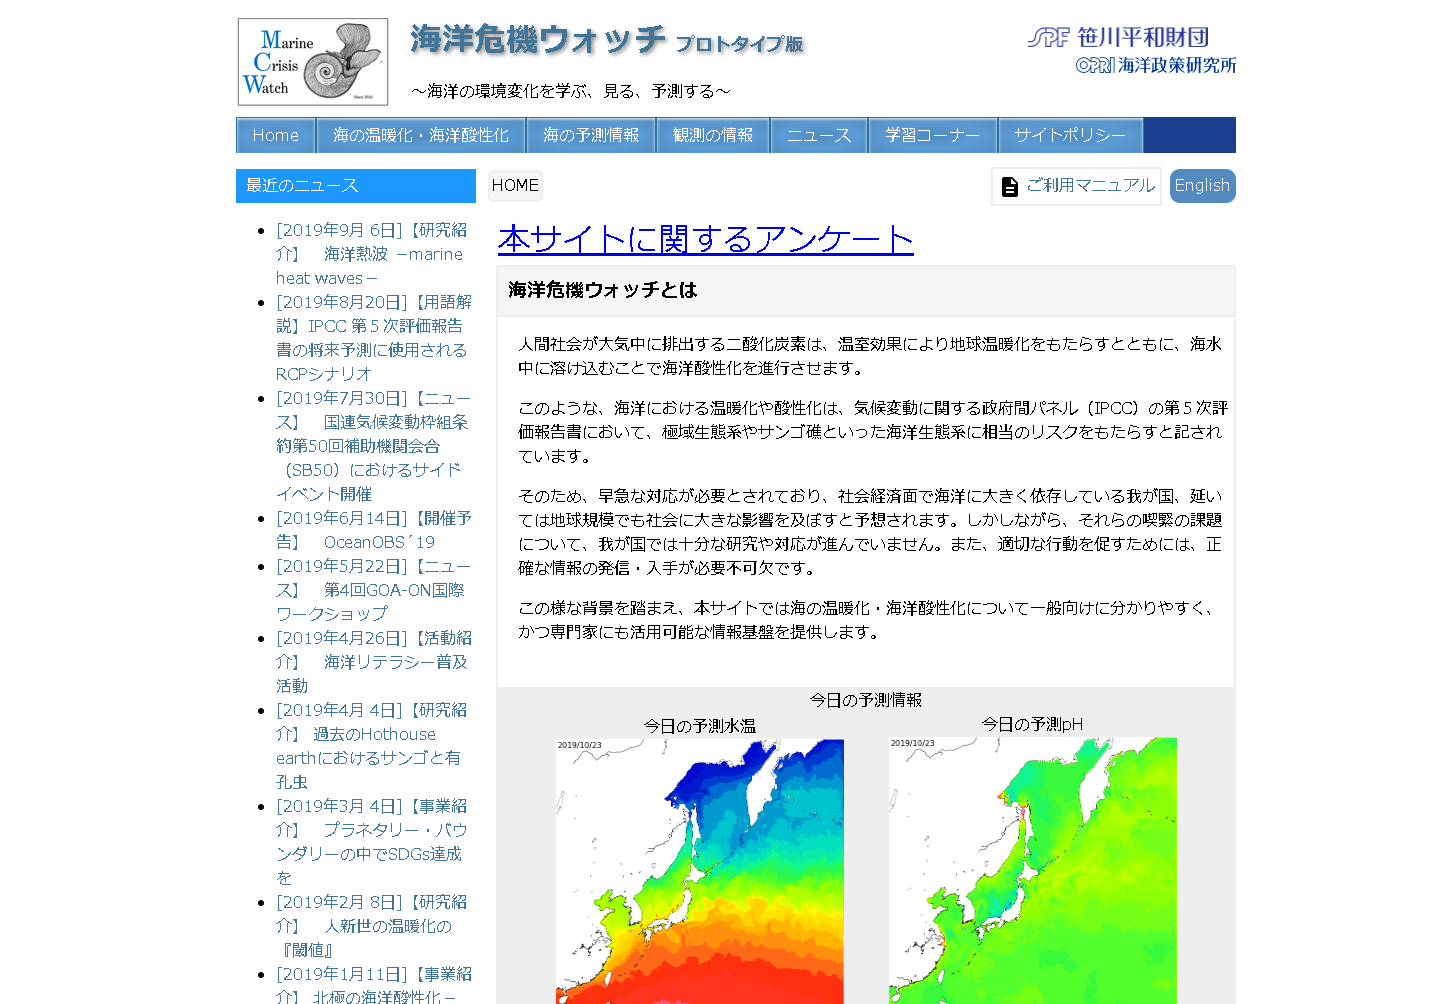 （キャプション）サイト「海洋危機ウォッチ（https://www.marinecrisiswatch.jp/mcwatch/）」